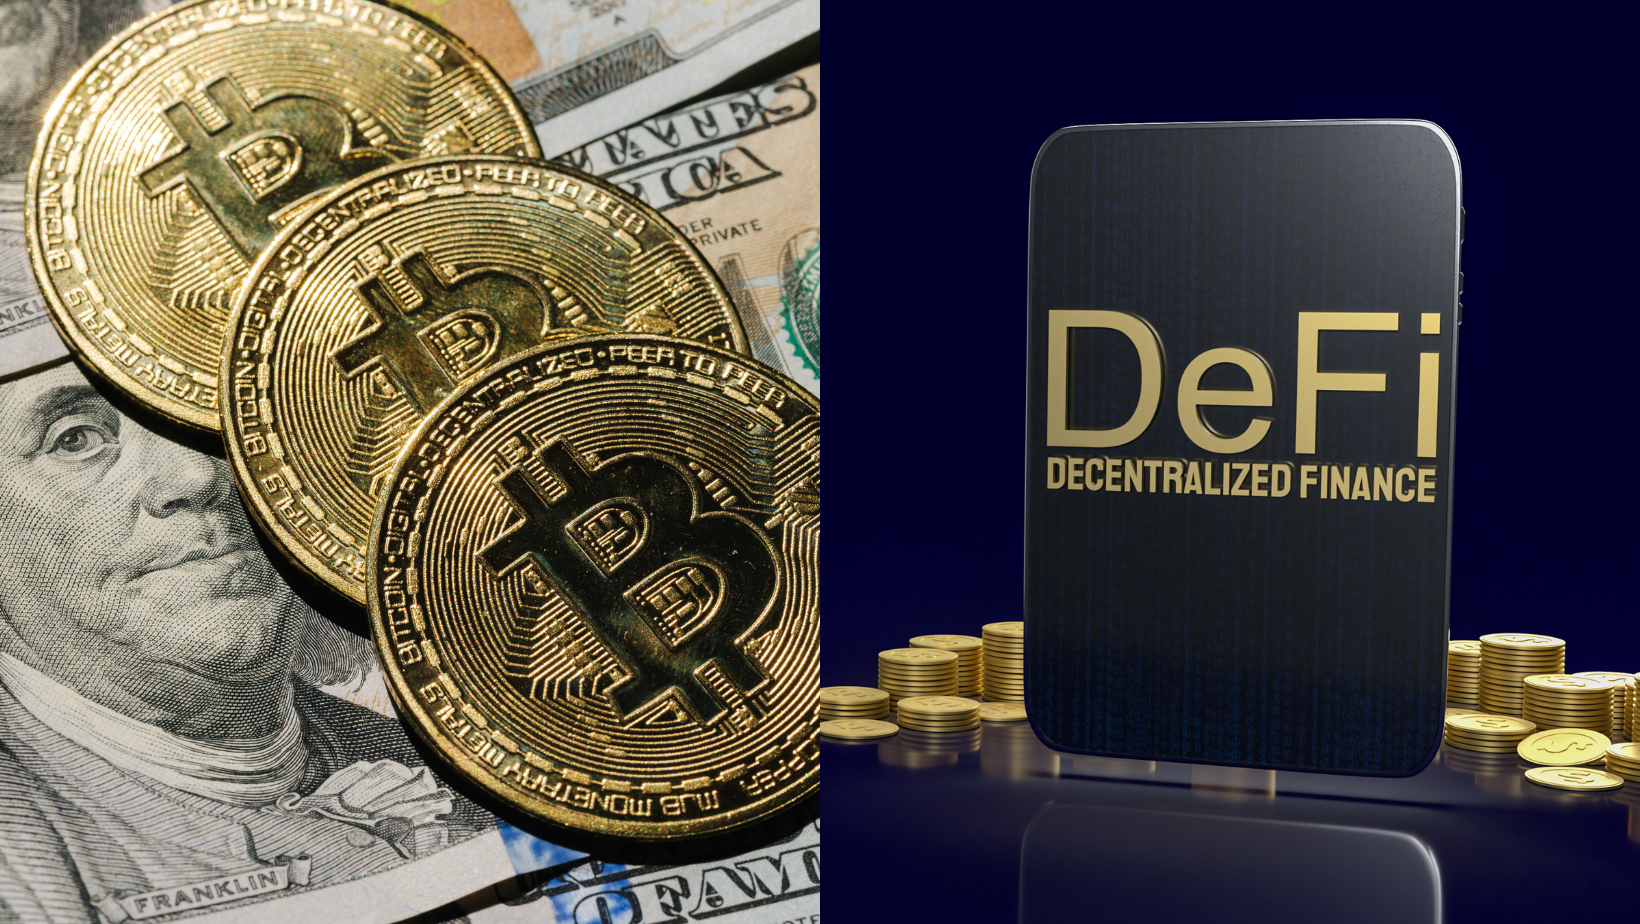 Bitcoin and DeFi